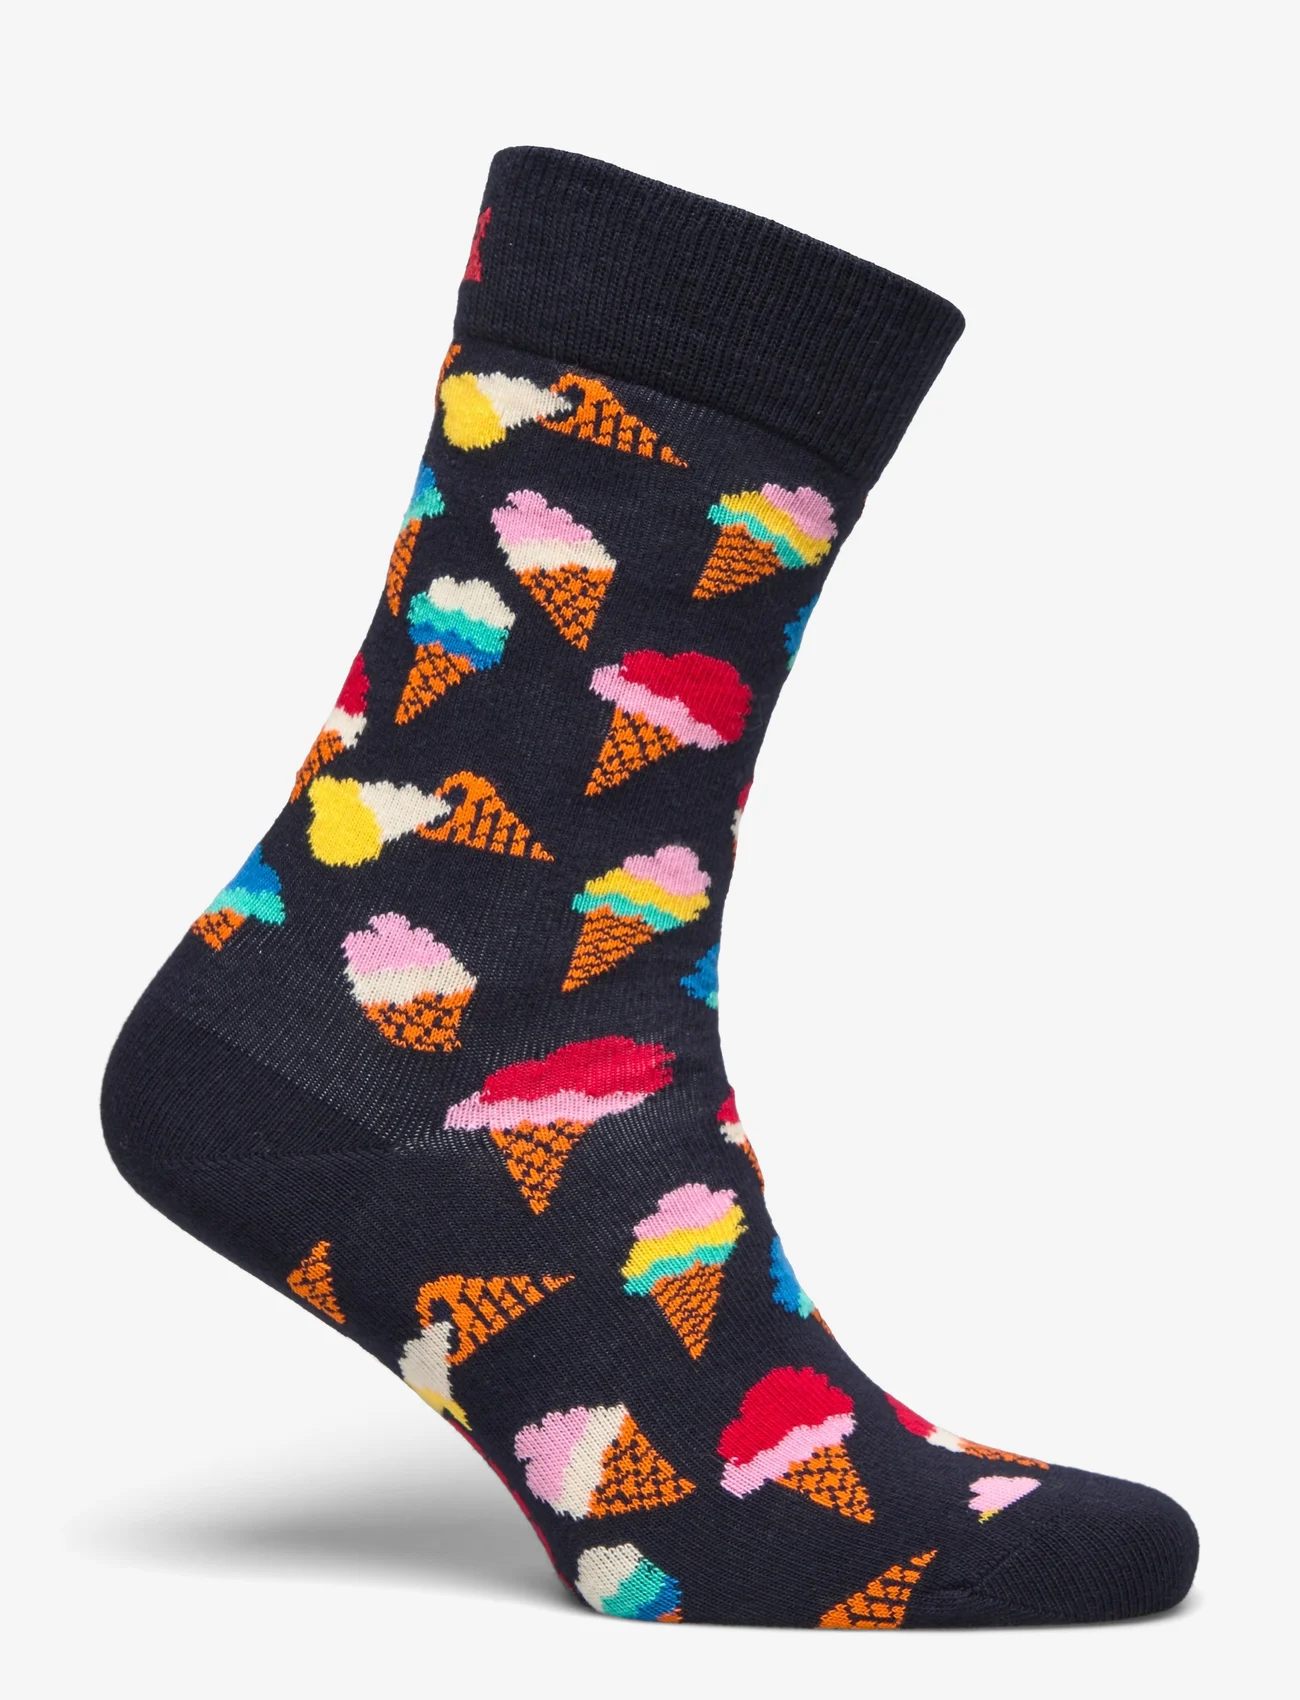 Happy Socks - Icecream Sock - laagste prijzen - navy - 1